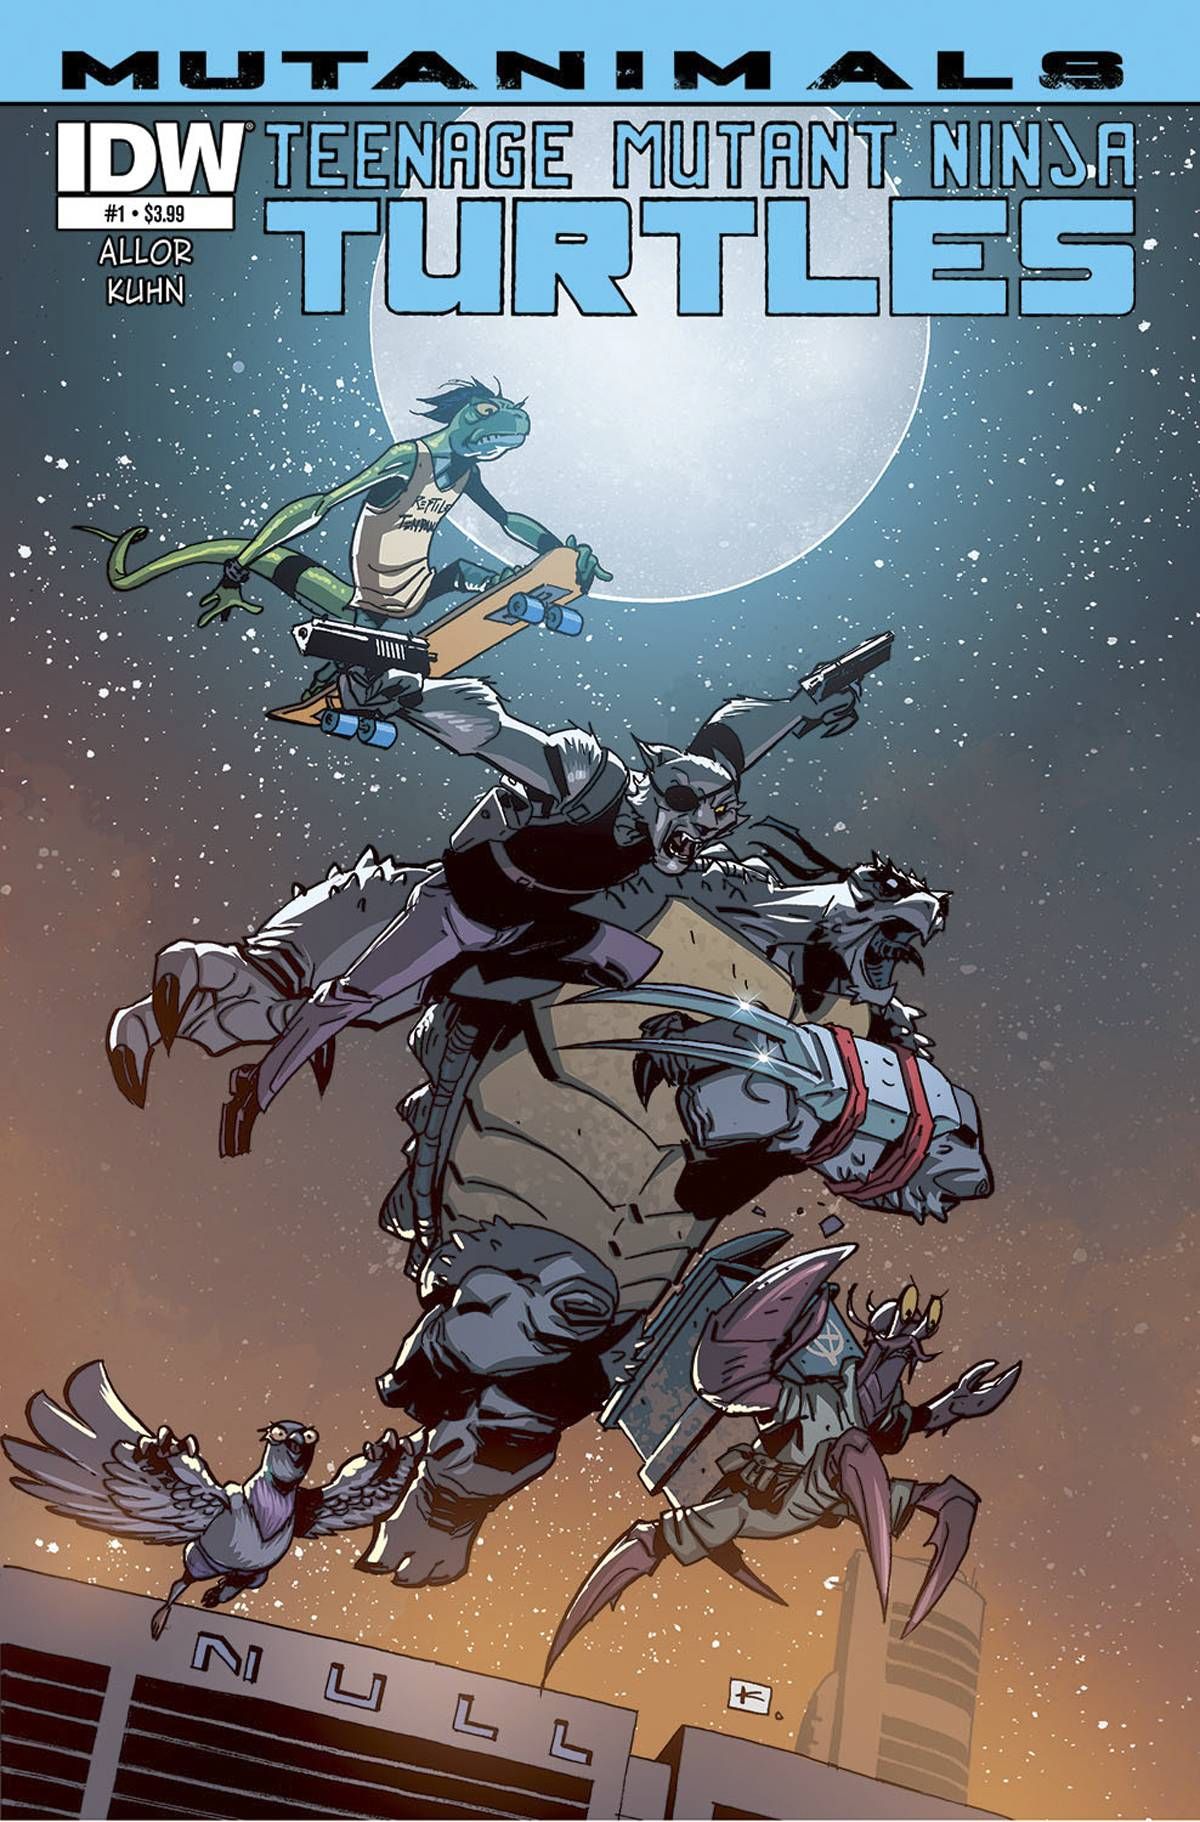 Teenage Mutant Ninja Turtles: Mutanimals #1 Comic